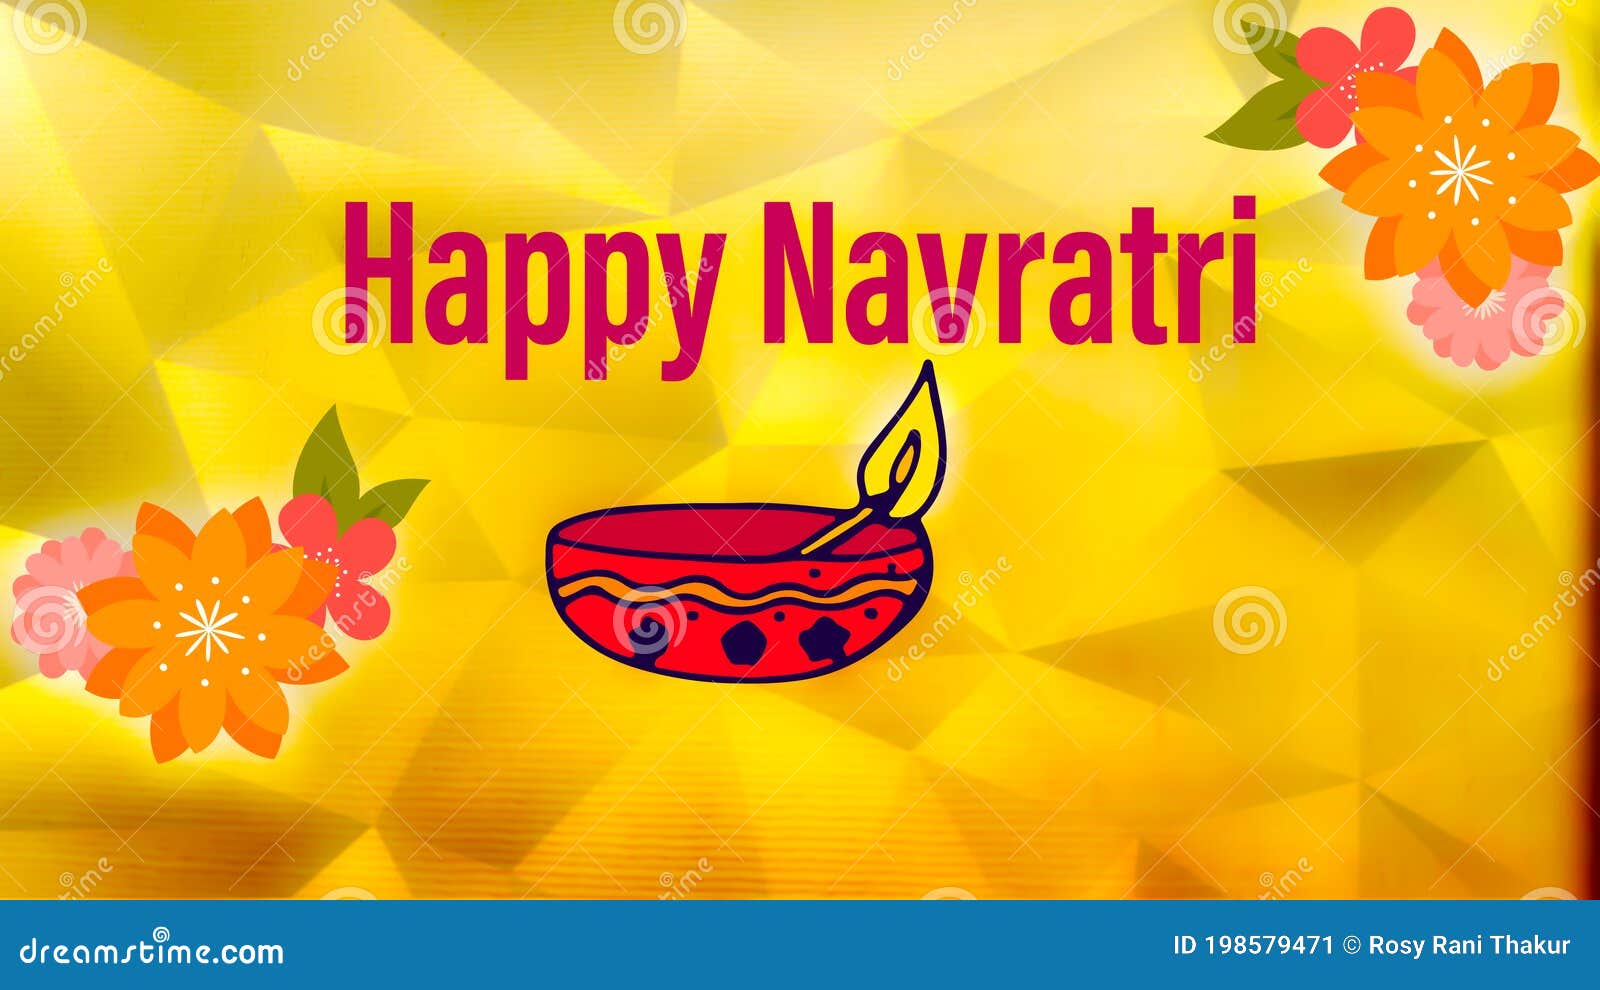 Beautiful Happy Navratri Illustration Image Stock Image - Image of ...